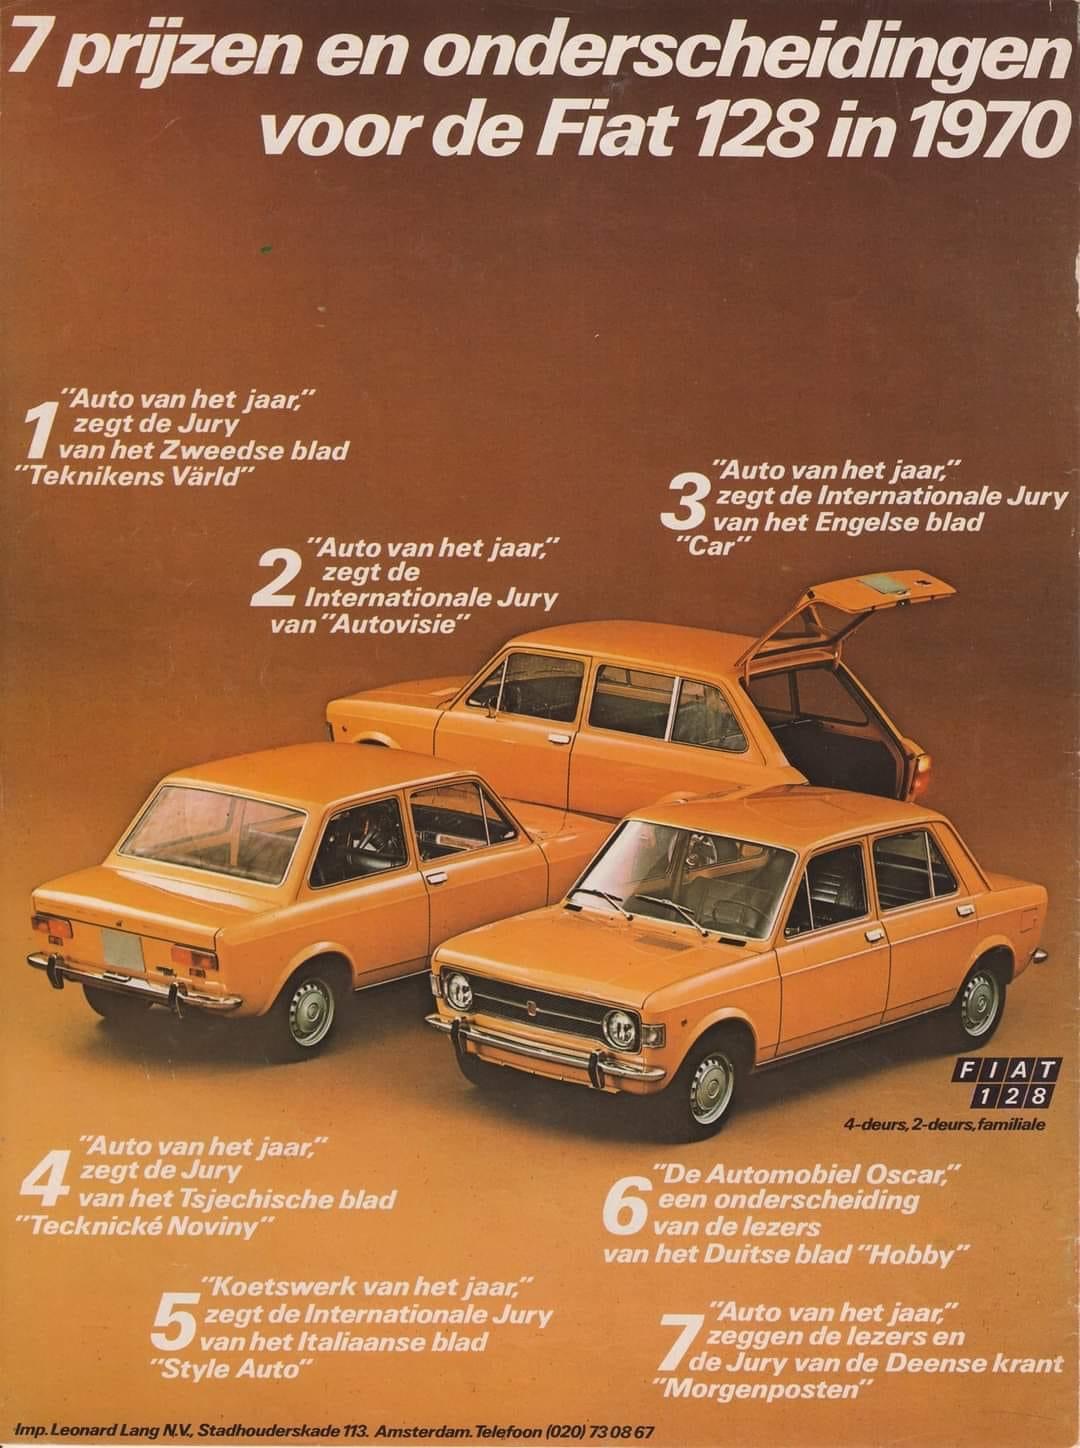 Fiat 128 advertentie